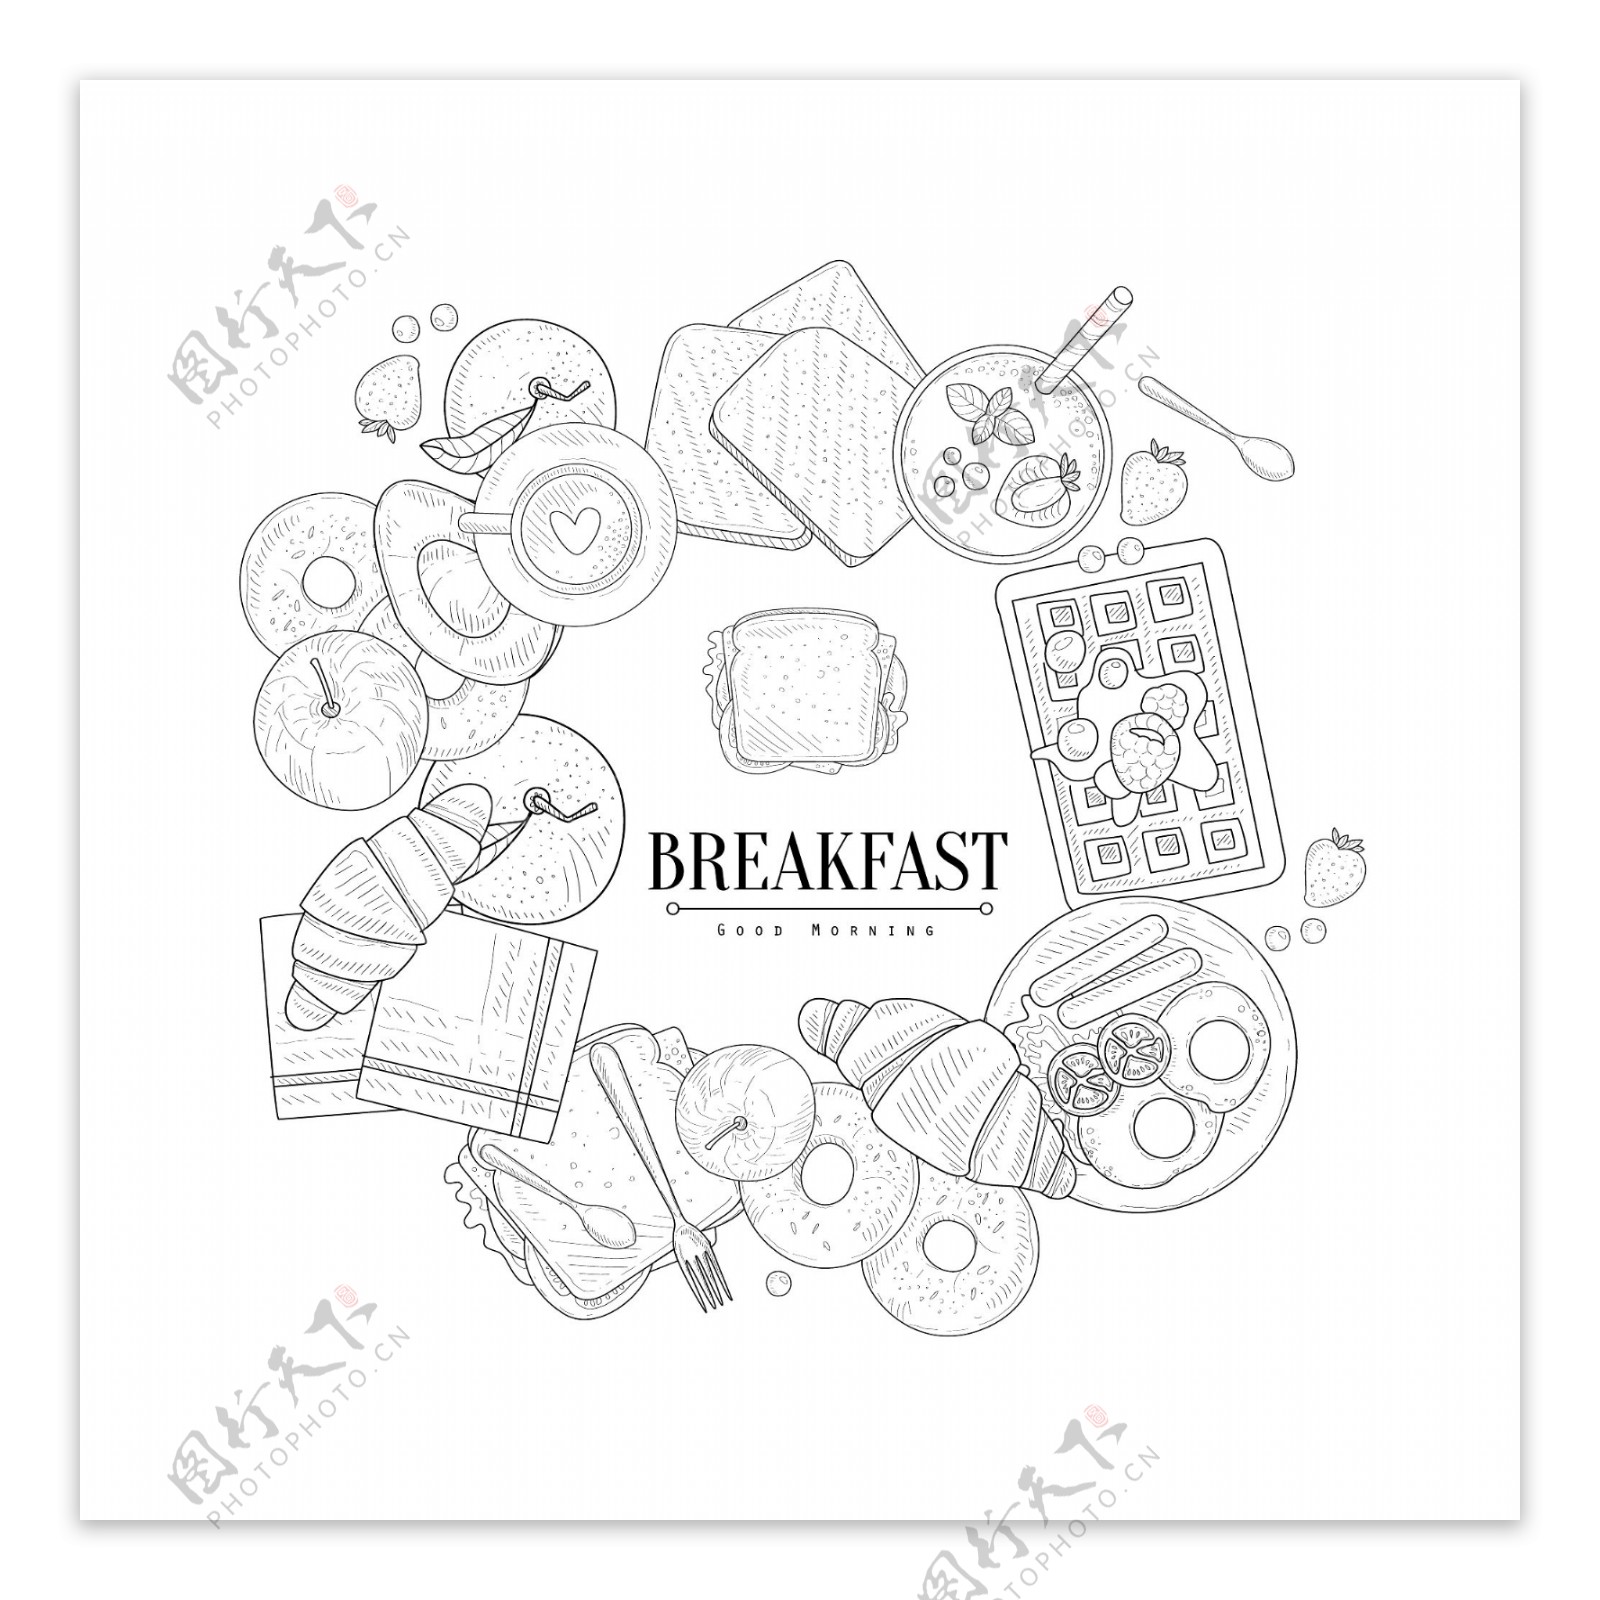 黑白手绘面包早餐插画